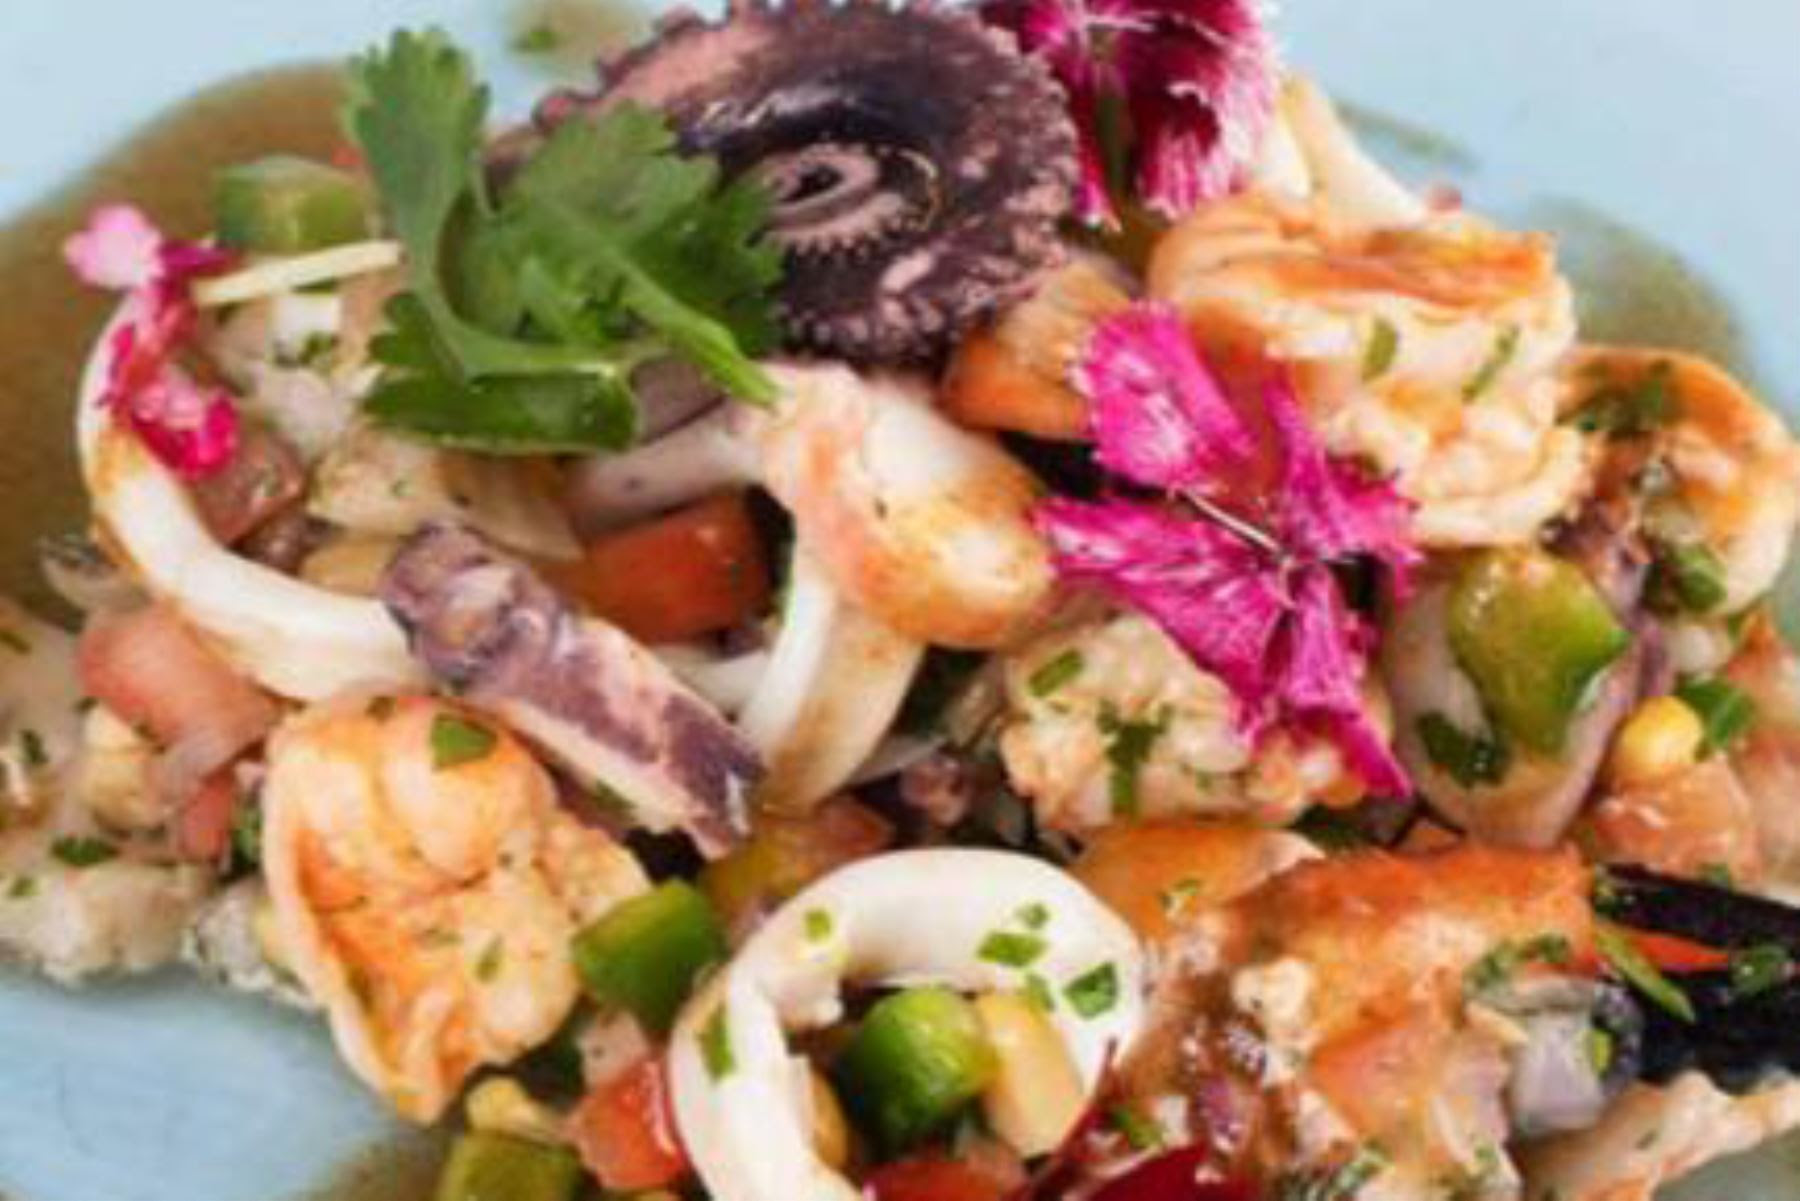 Libro presentará lo mejor de la gastronomía peruana y dominicana